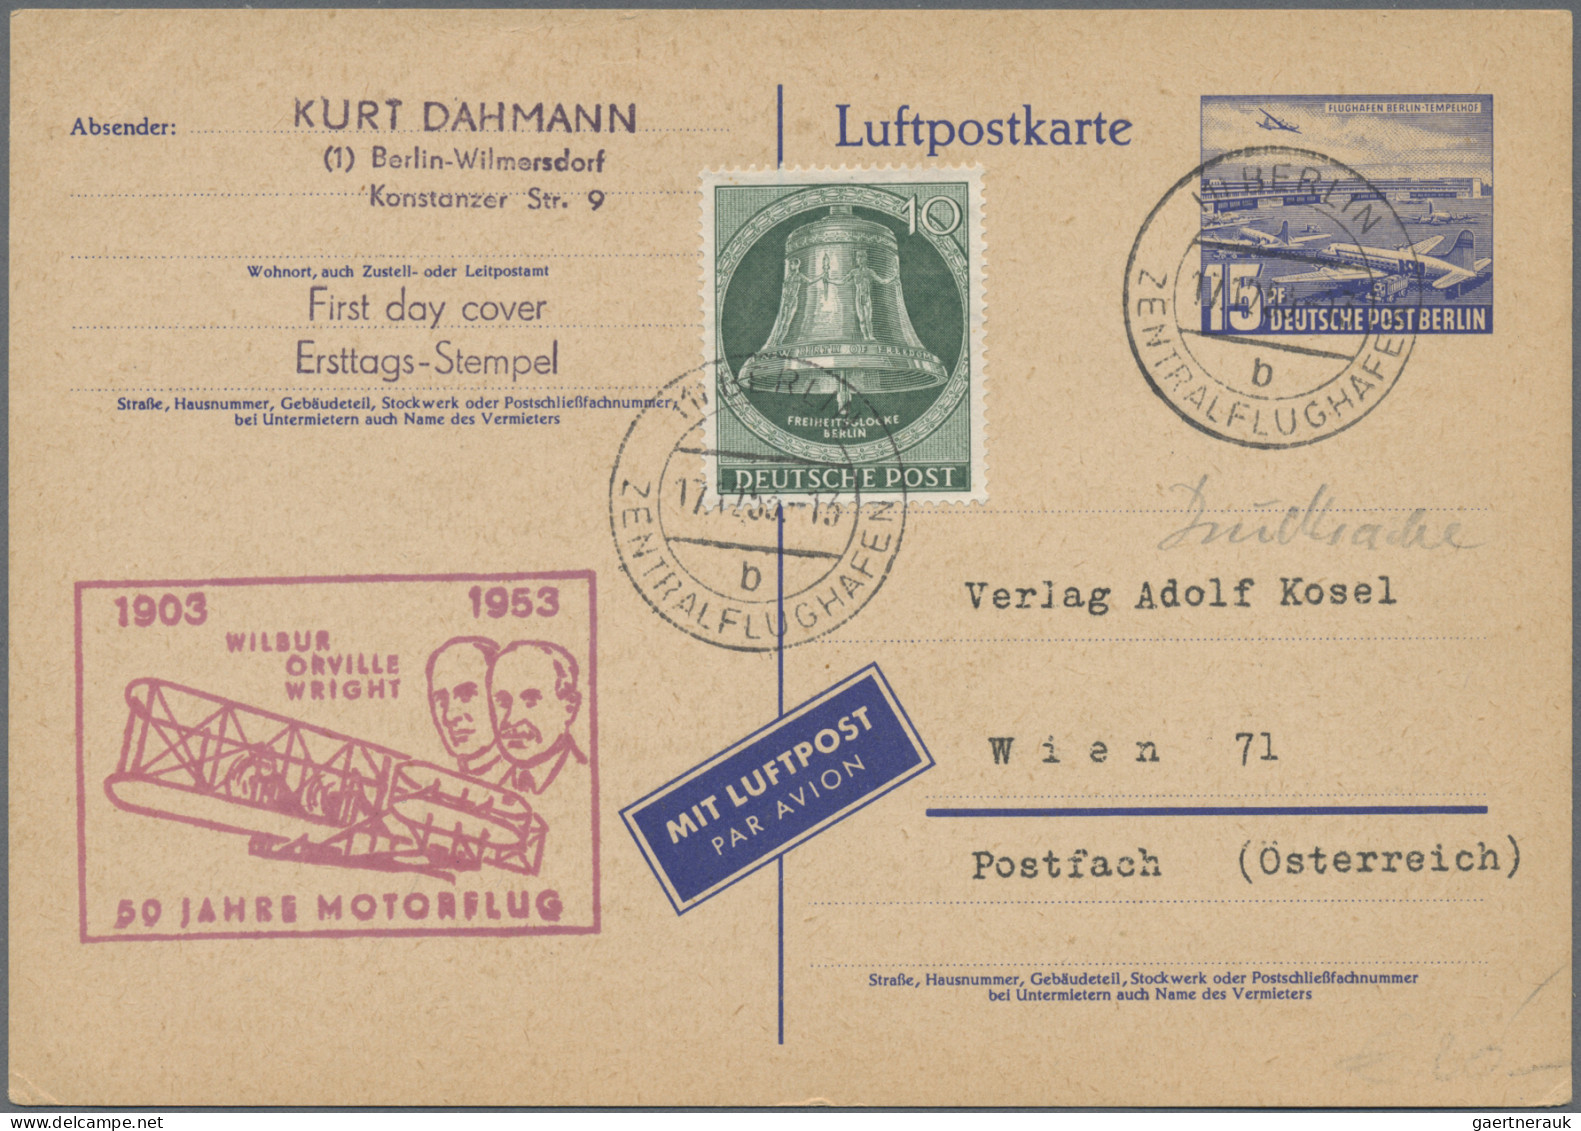 Air Mail - Germany: 1951/1957, saubere Partie von 14 Flugpostbelegen mit Frankat